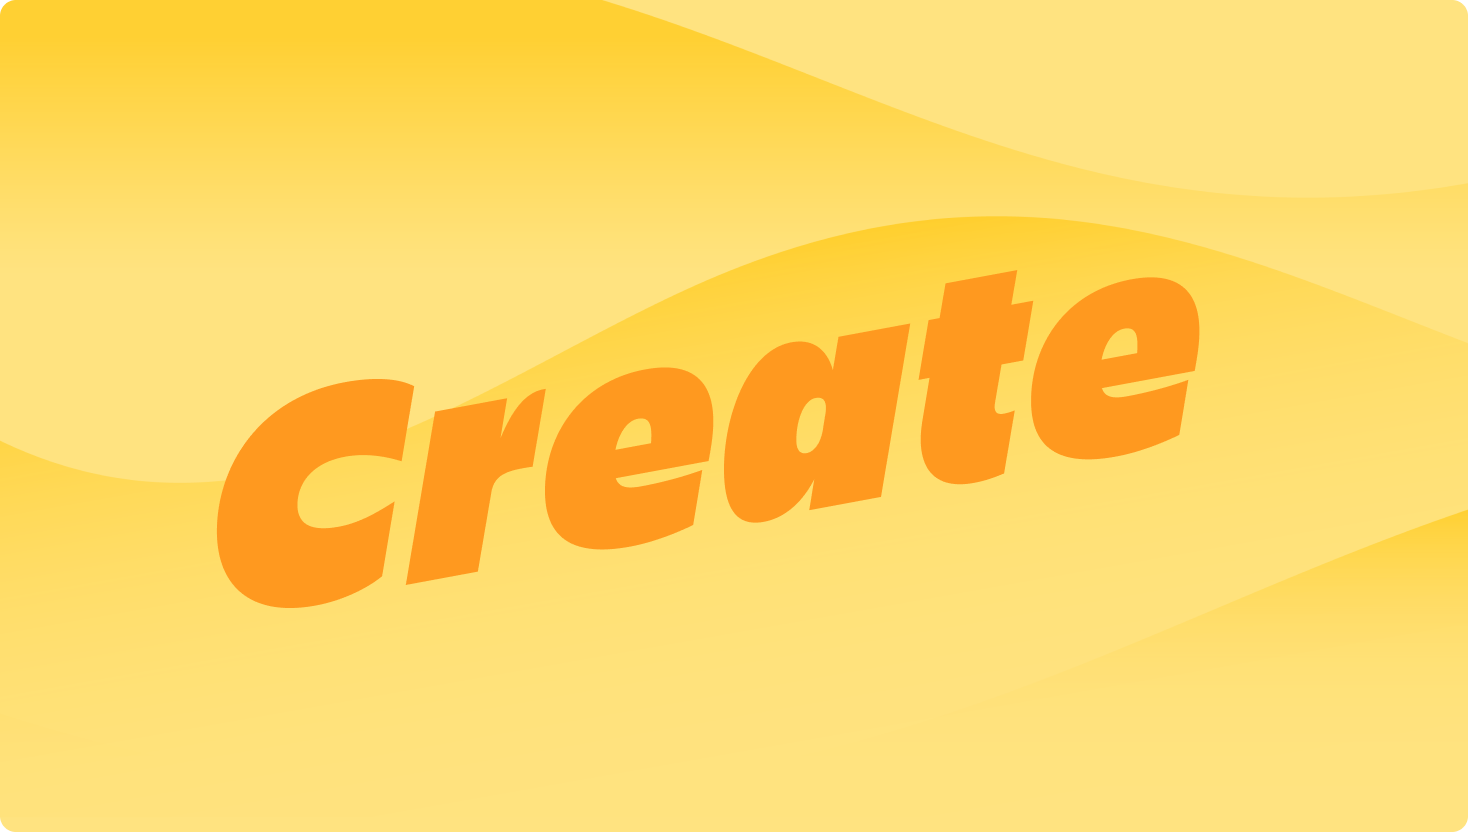 Image de vagues jaunes avec le mot « Create » (Créer) au centre